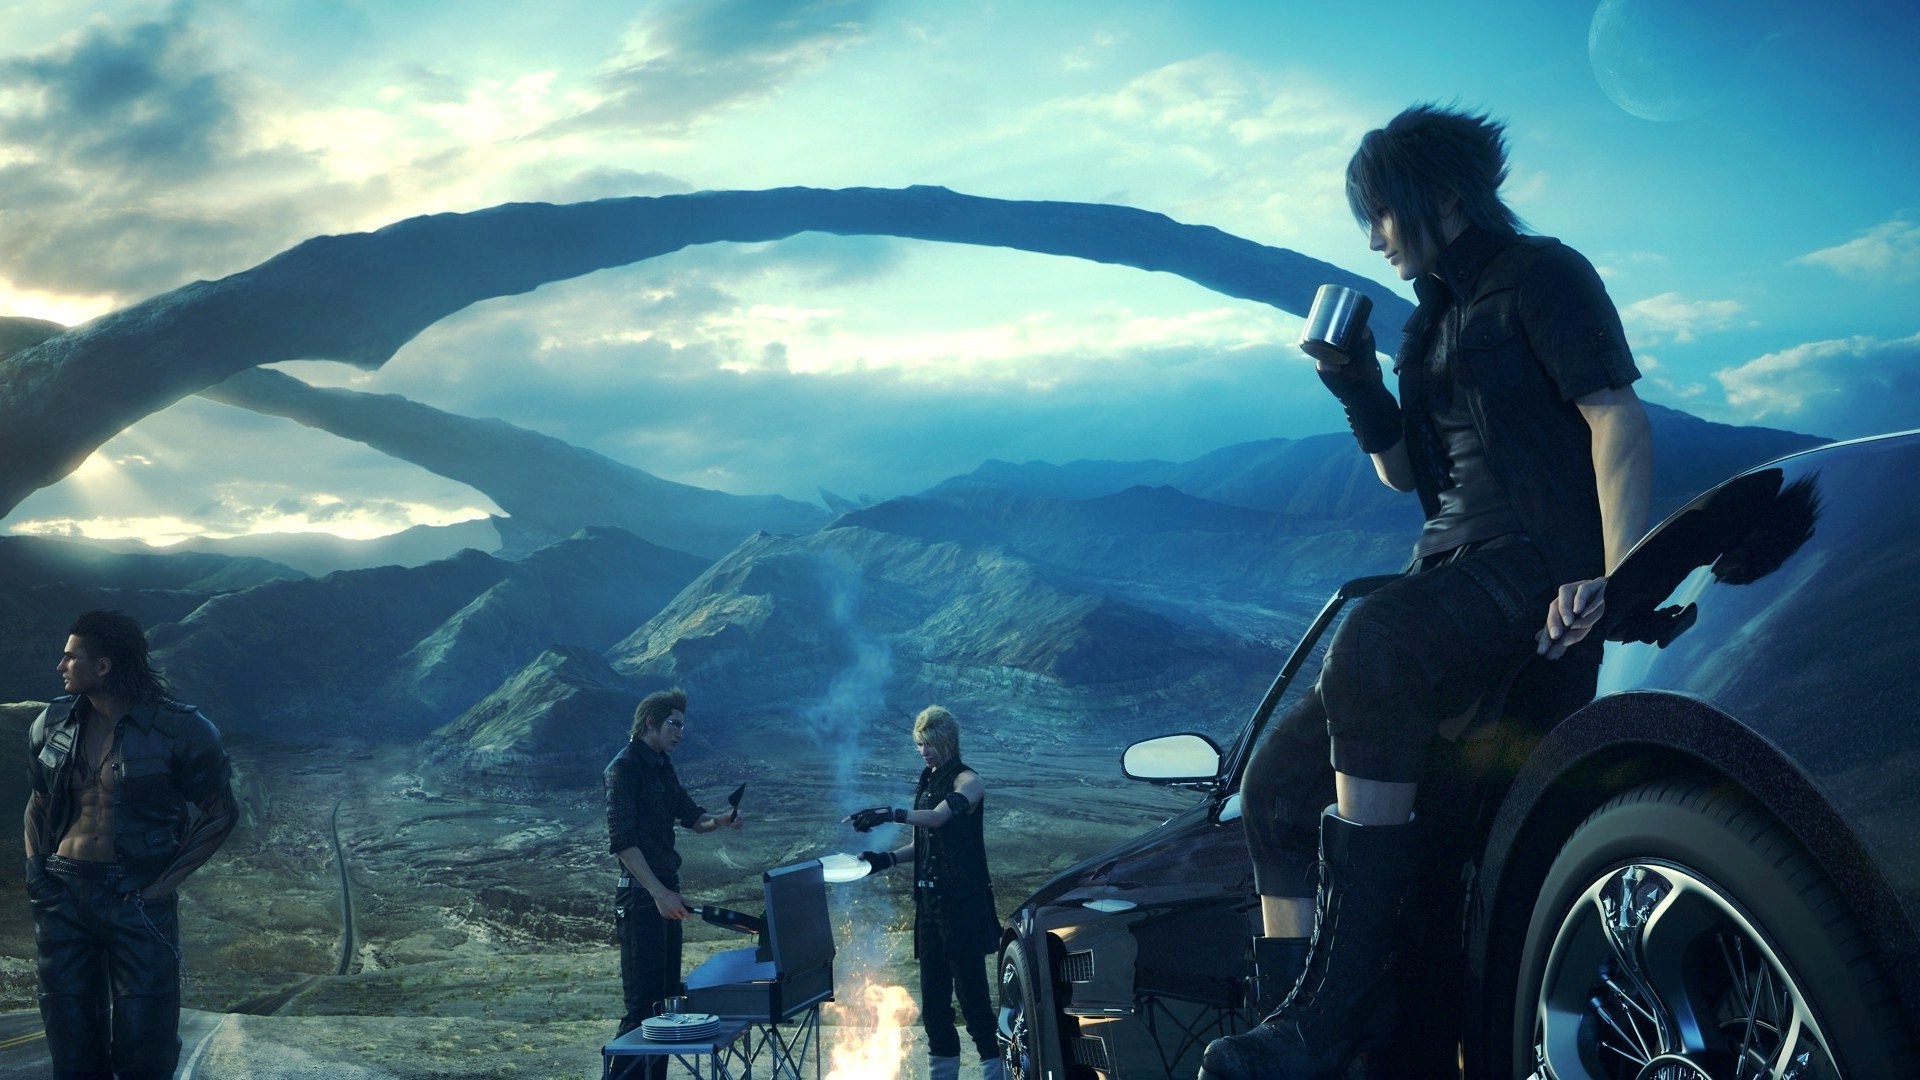 Final Fantasy XV Uncovered mostrará nuevas imágenes del juego y anunciará su fecha de lanzamiento final.